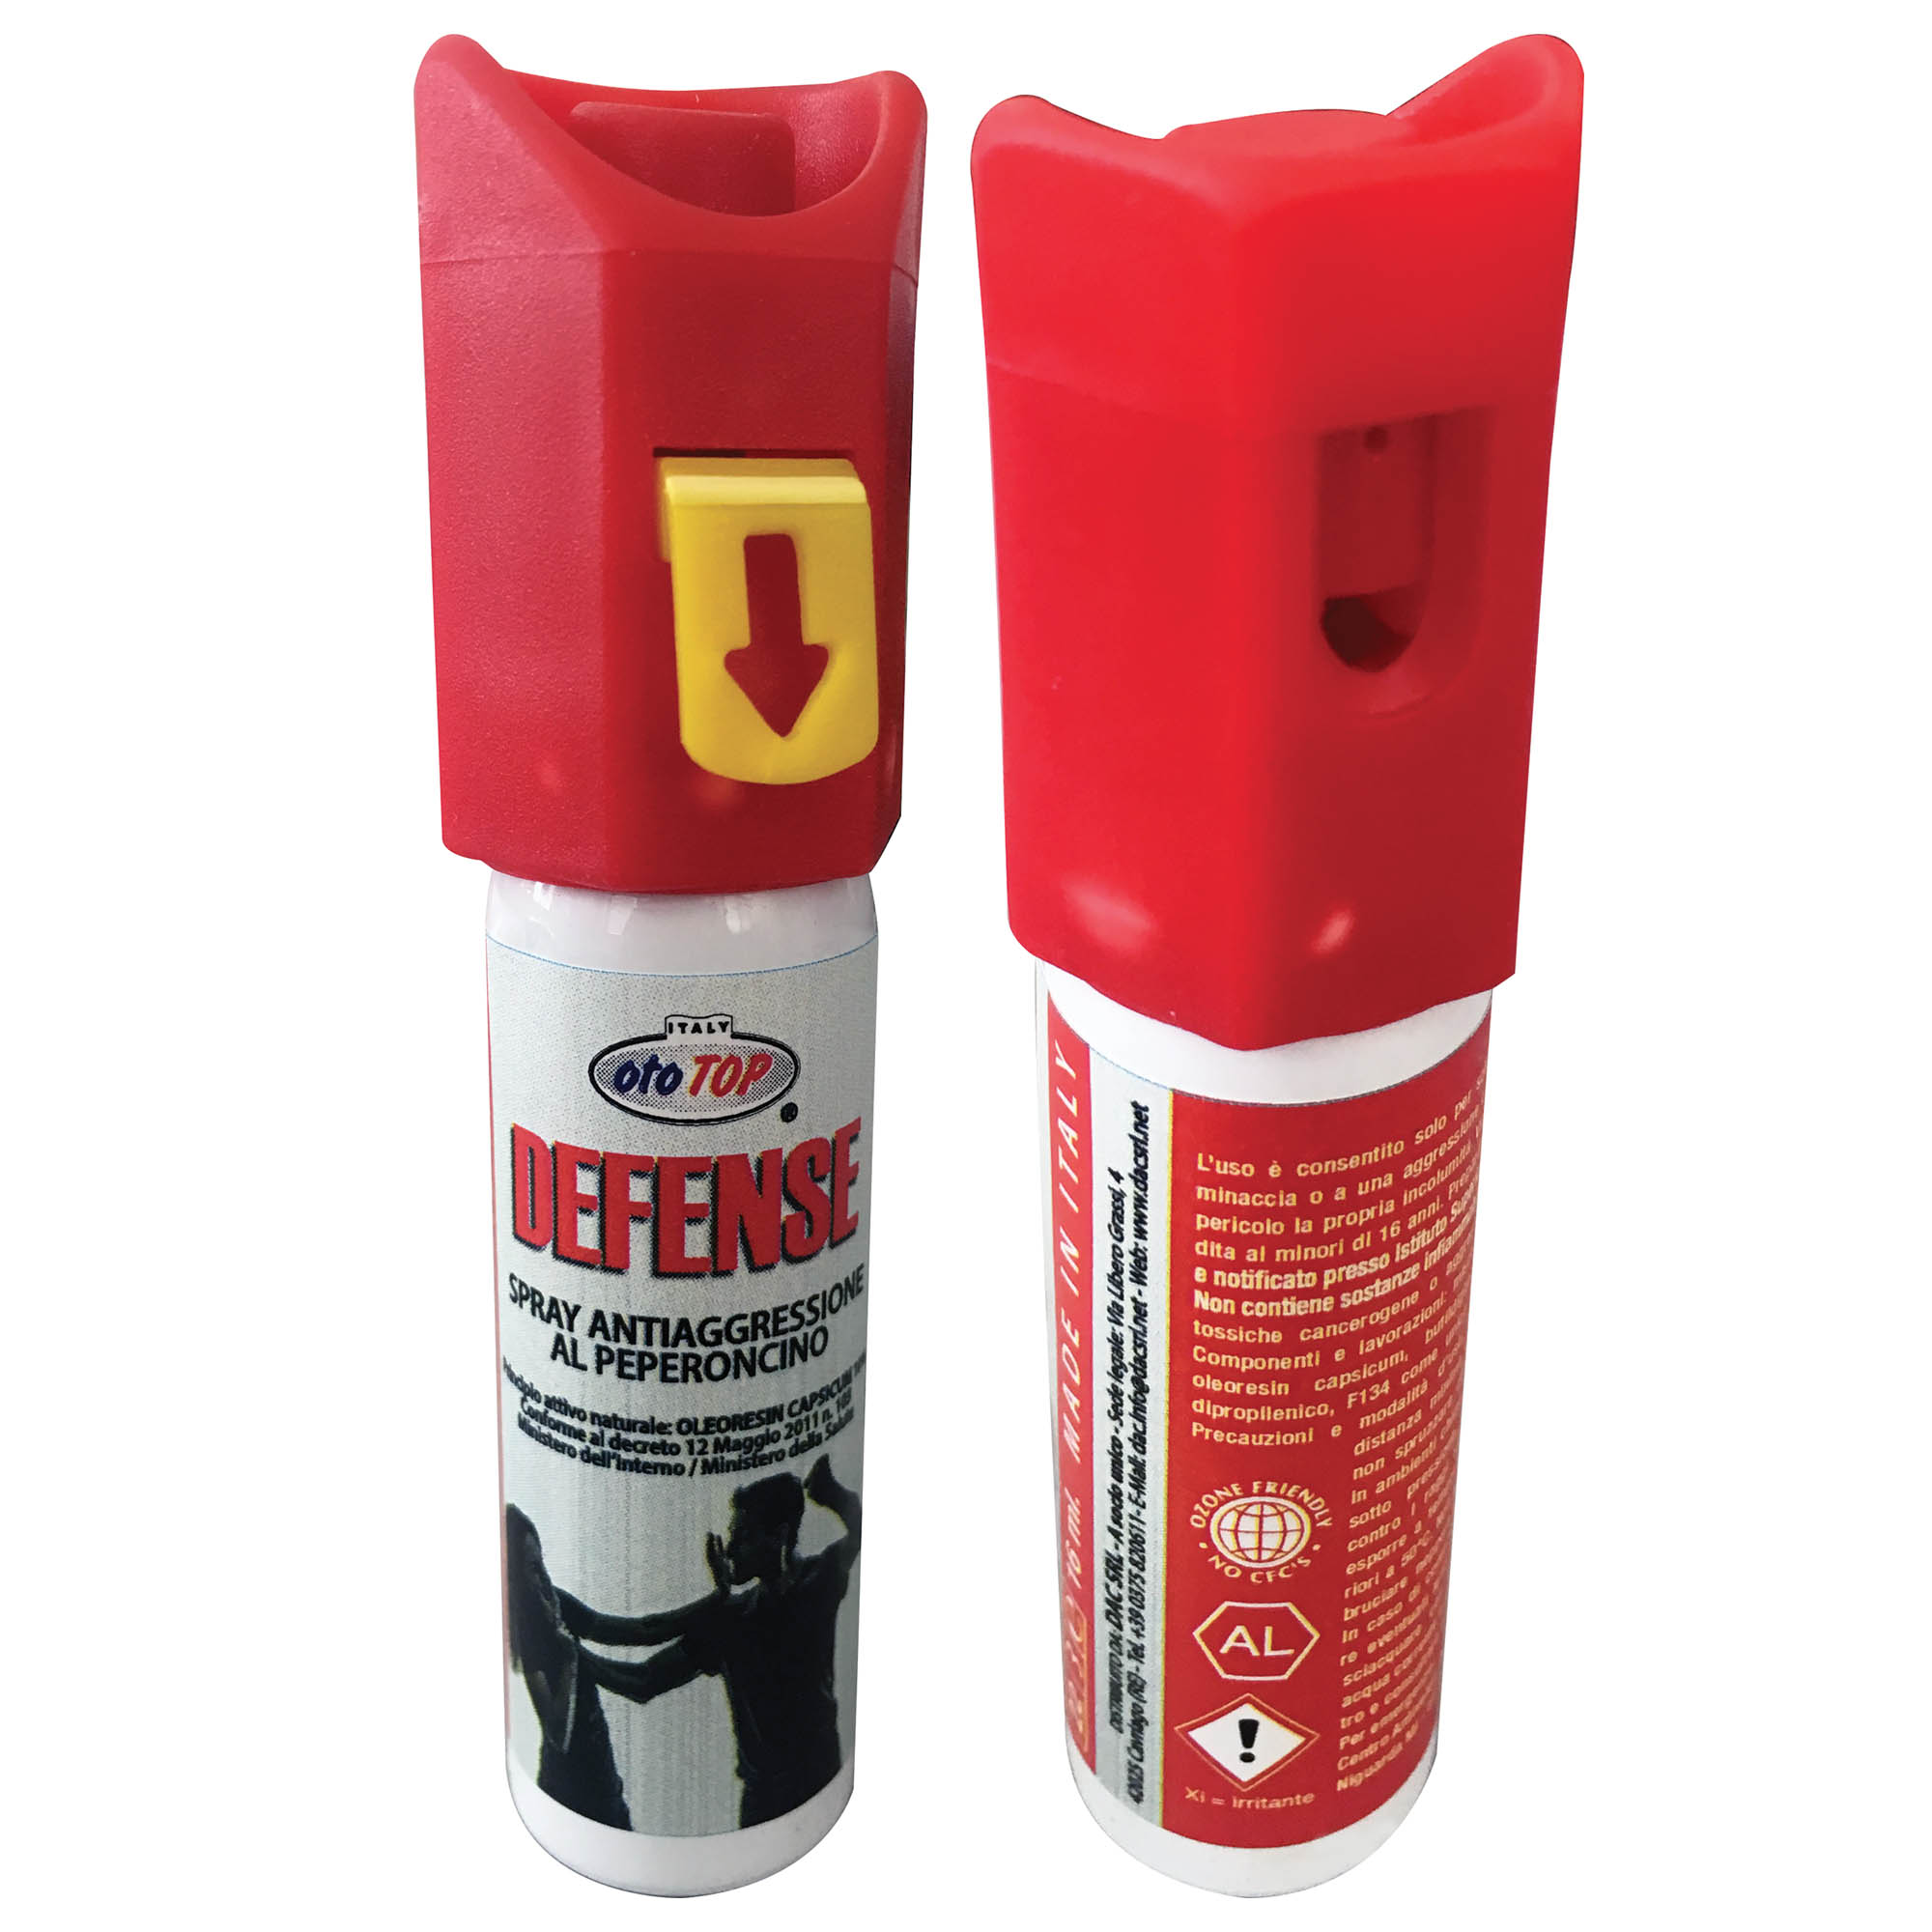 DEFENSE - spray antiaggressione al peperoncino – DAC Srl